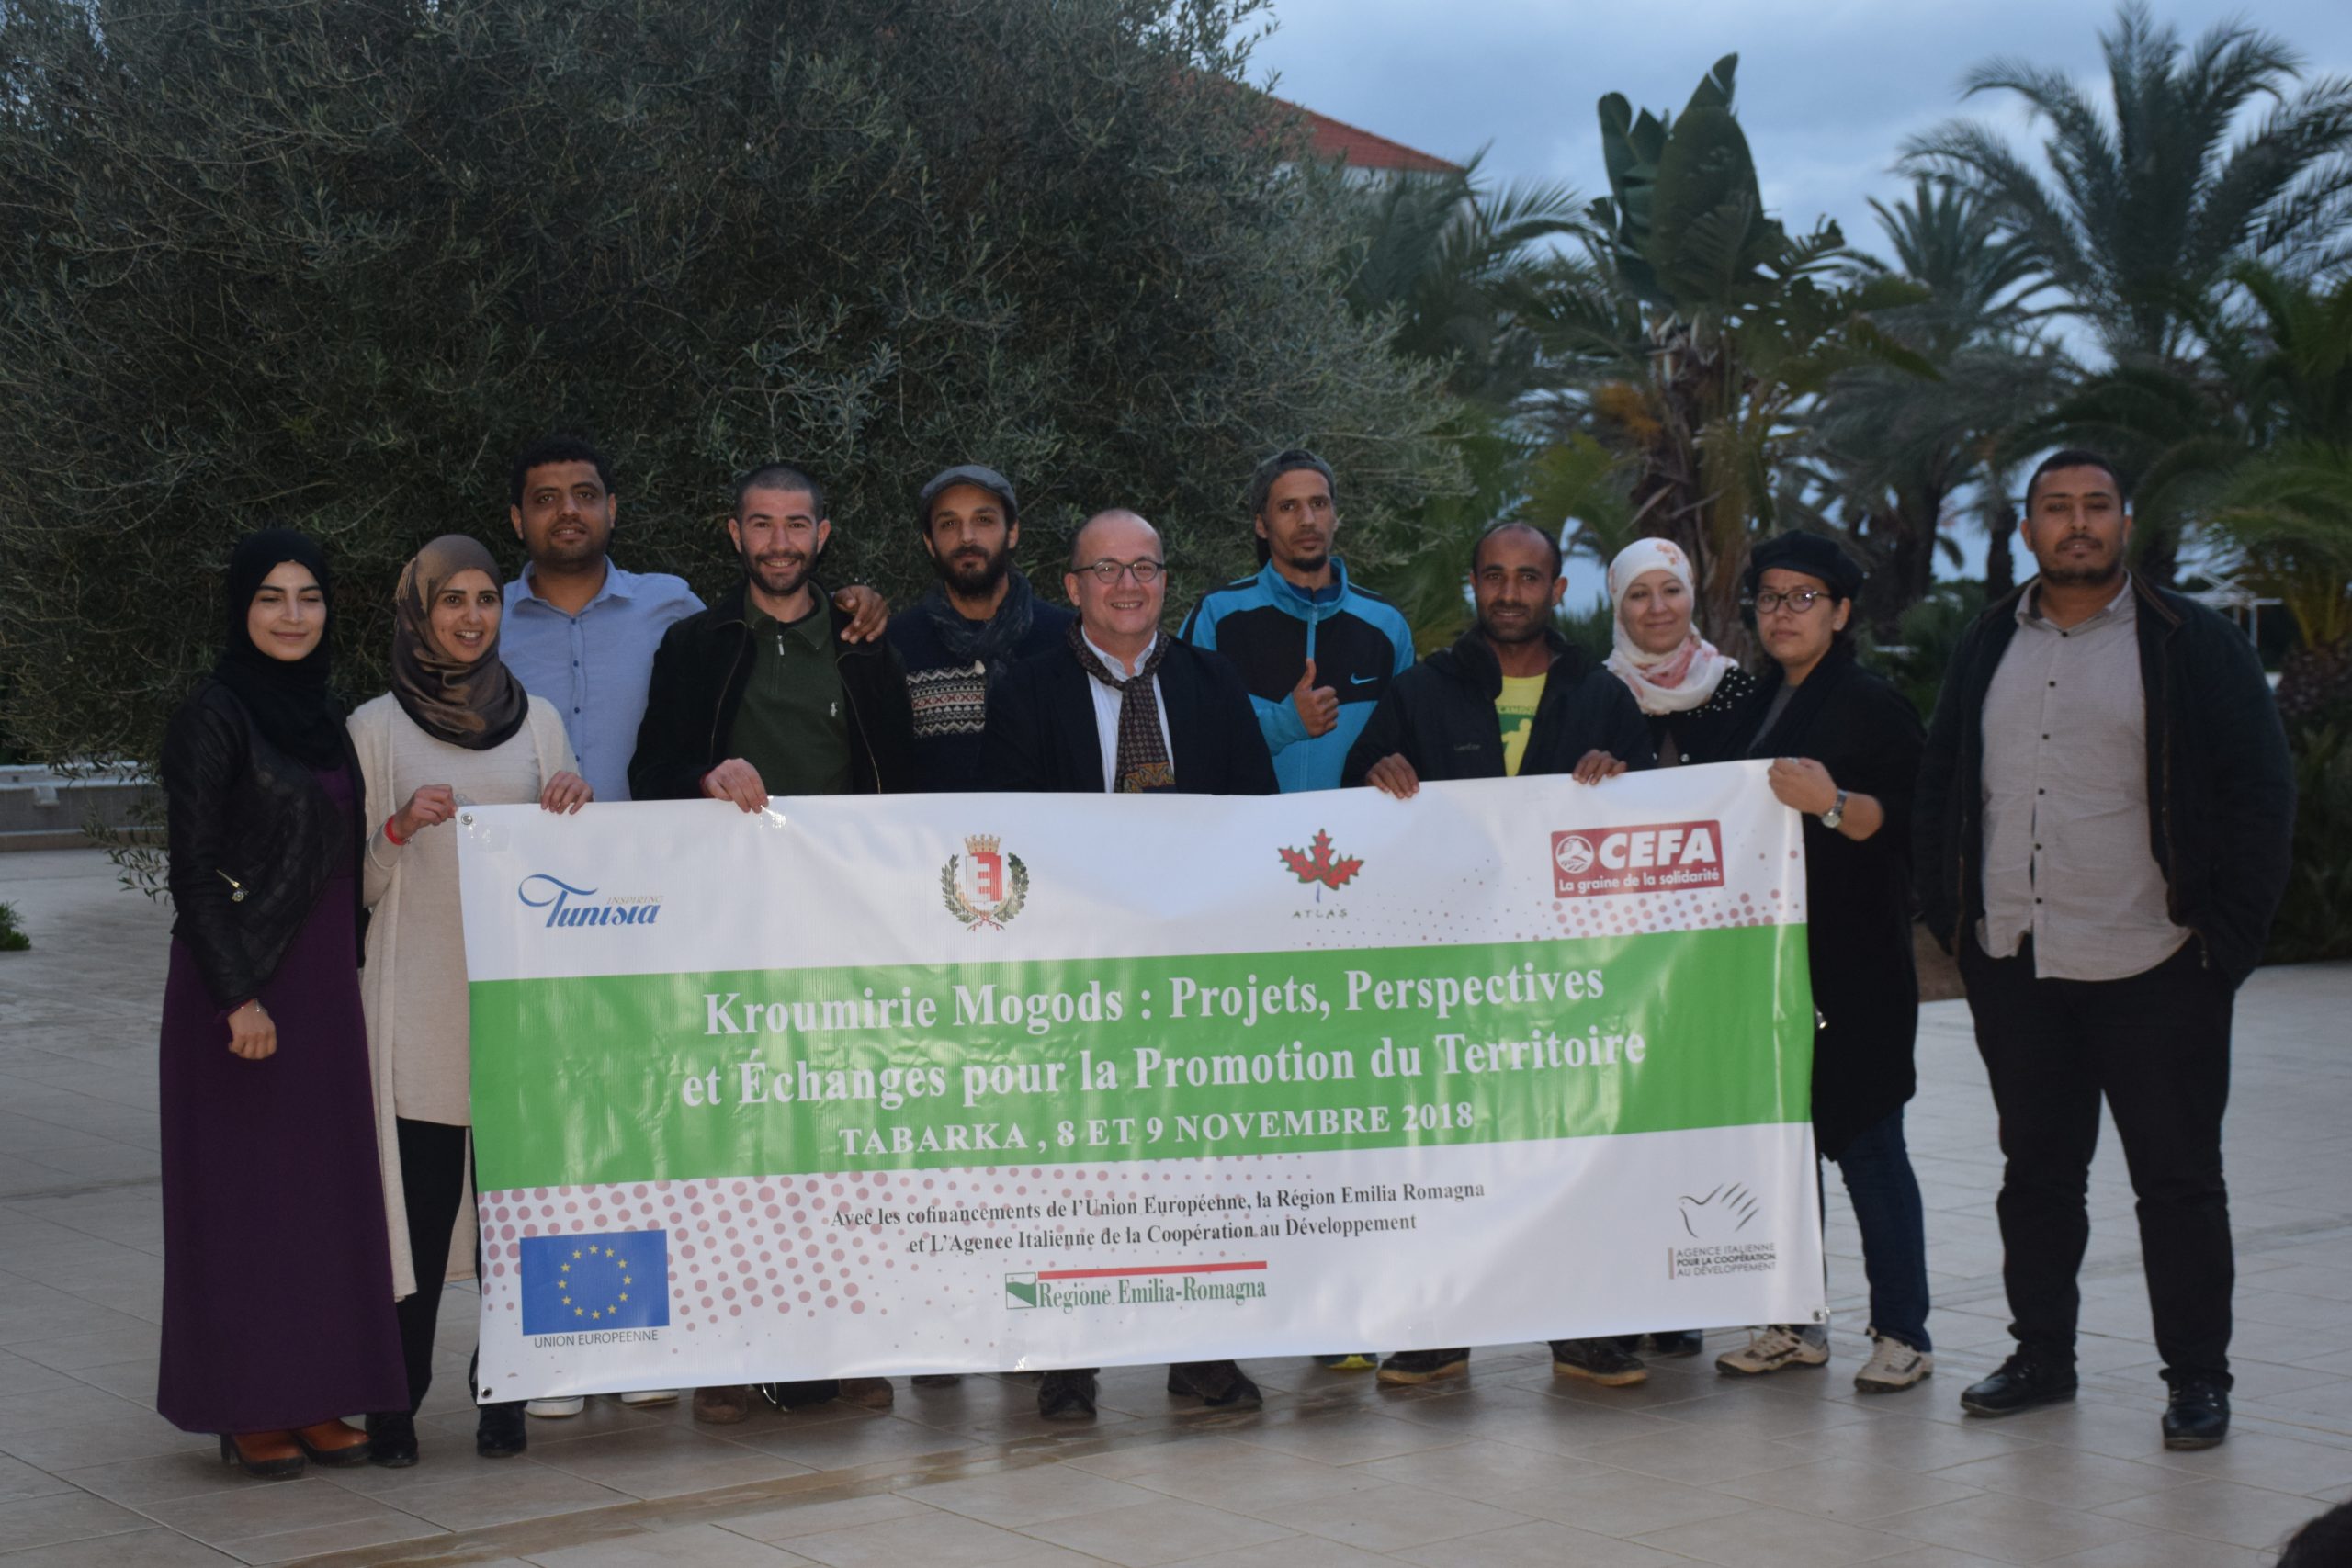 Progetto Start Up Tunisia: dalle giovani idee di impresa allo studio di mercato per i prodotti biologici